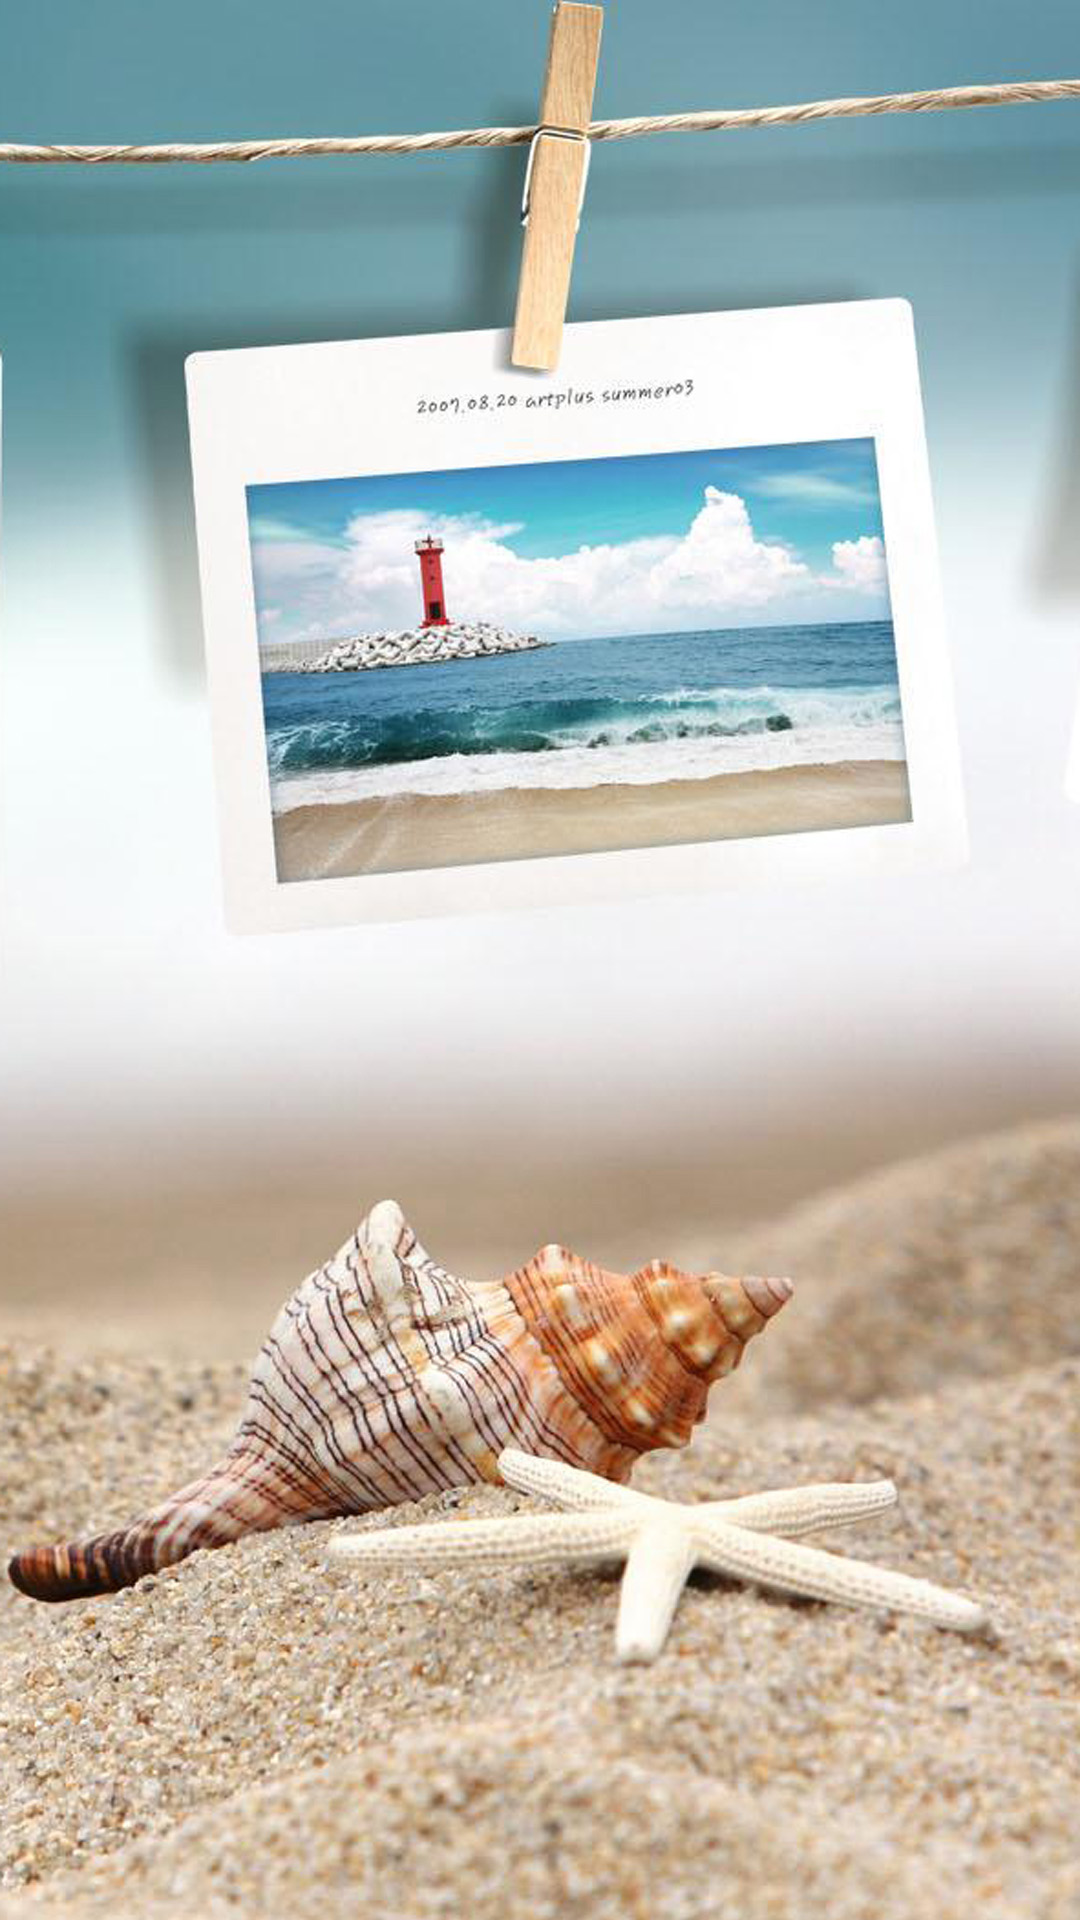 Beach Photo Memories Android Wallpaper - Iphone Memories - HD Wallpaper 